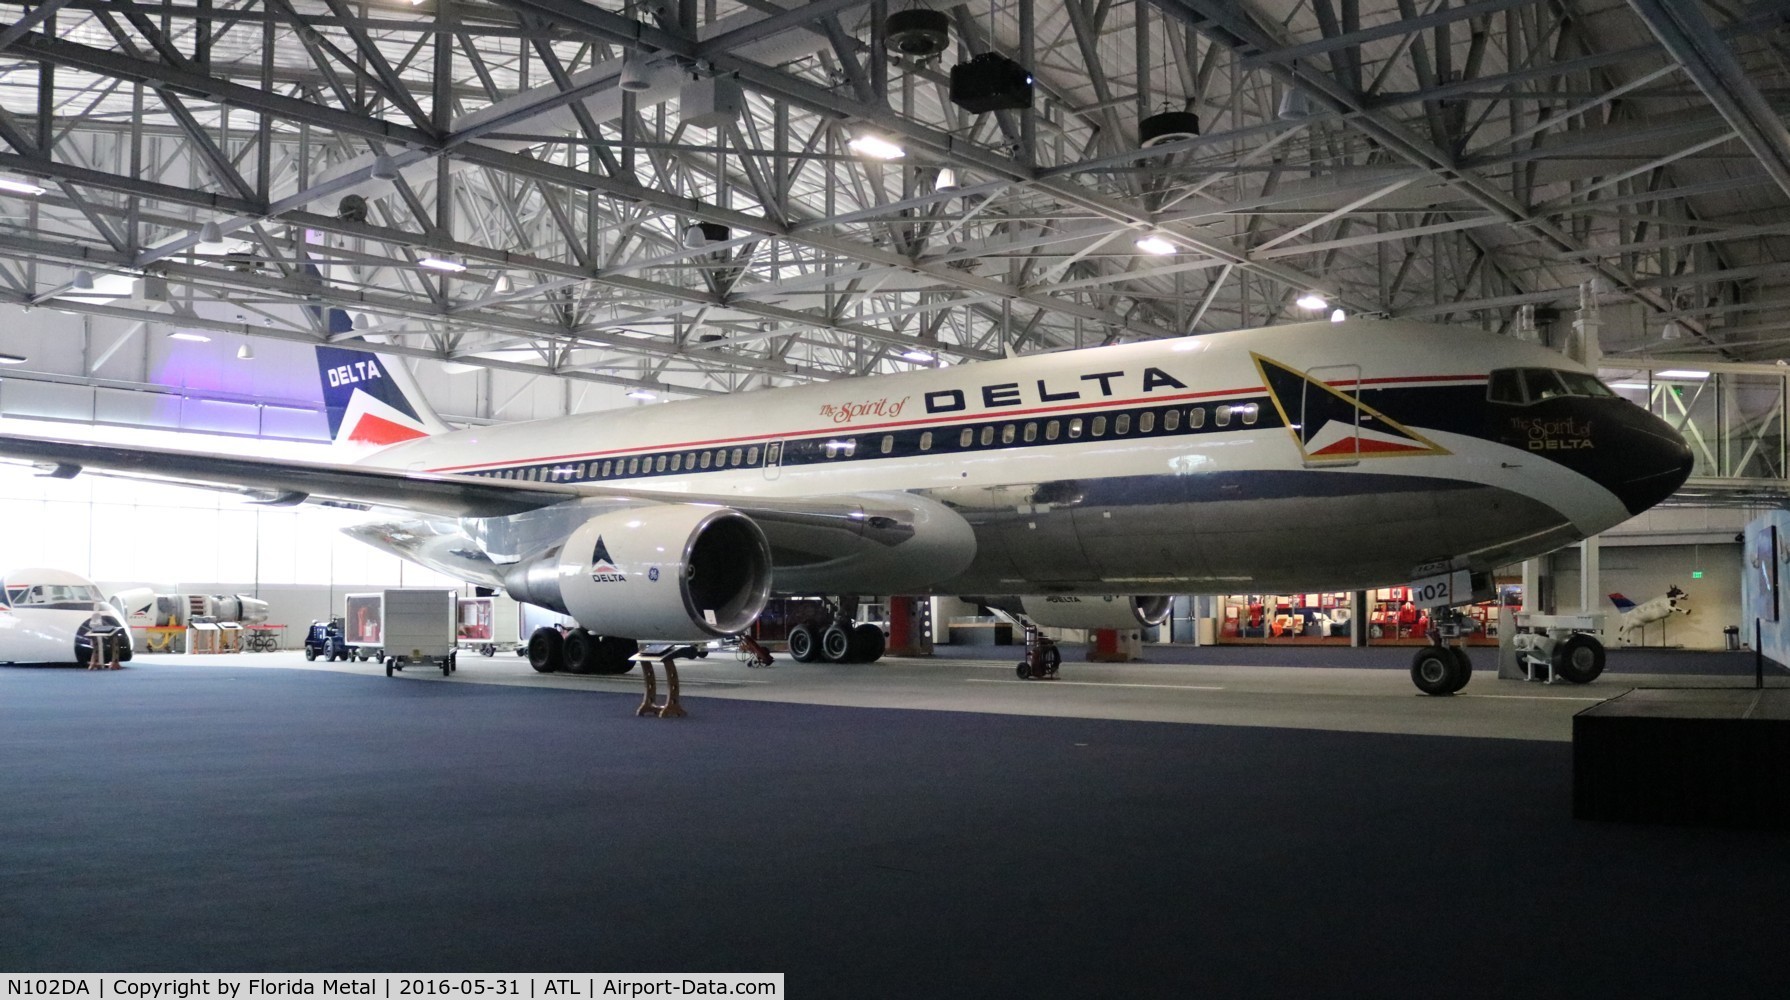 N102DA, 1982 Boeing 767-232 C/N 22214, The Spirit of Delta at Delta museum